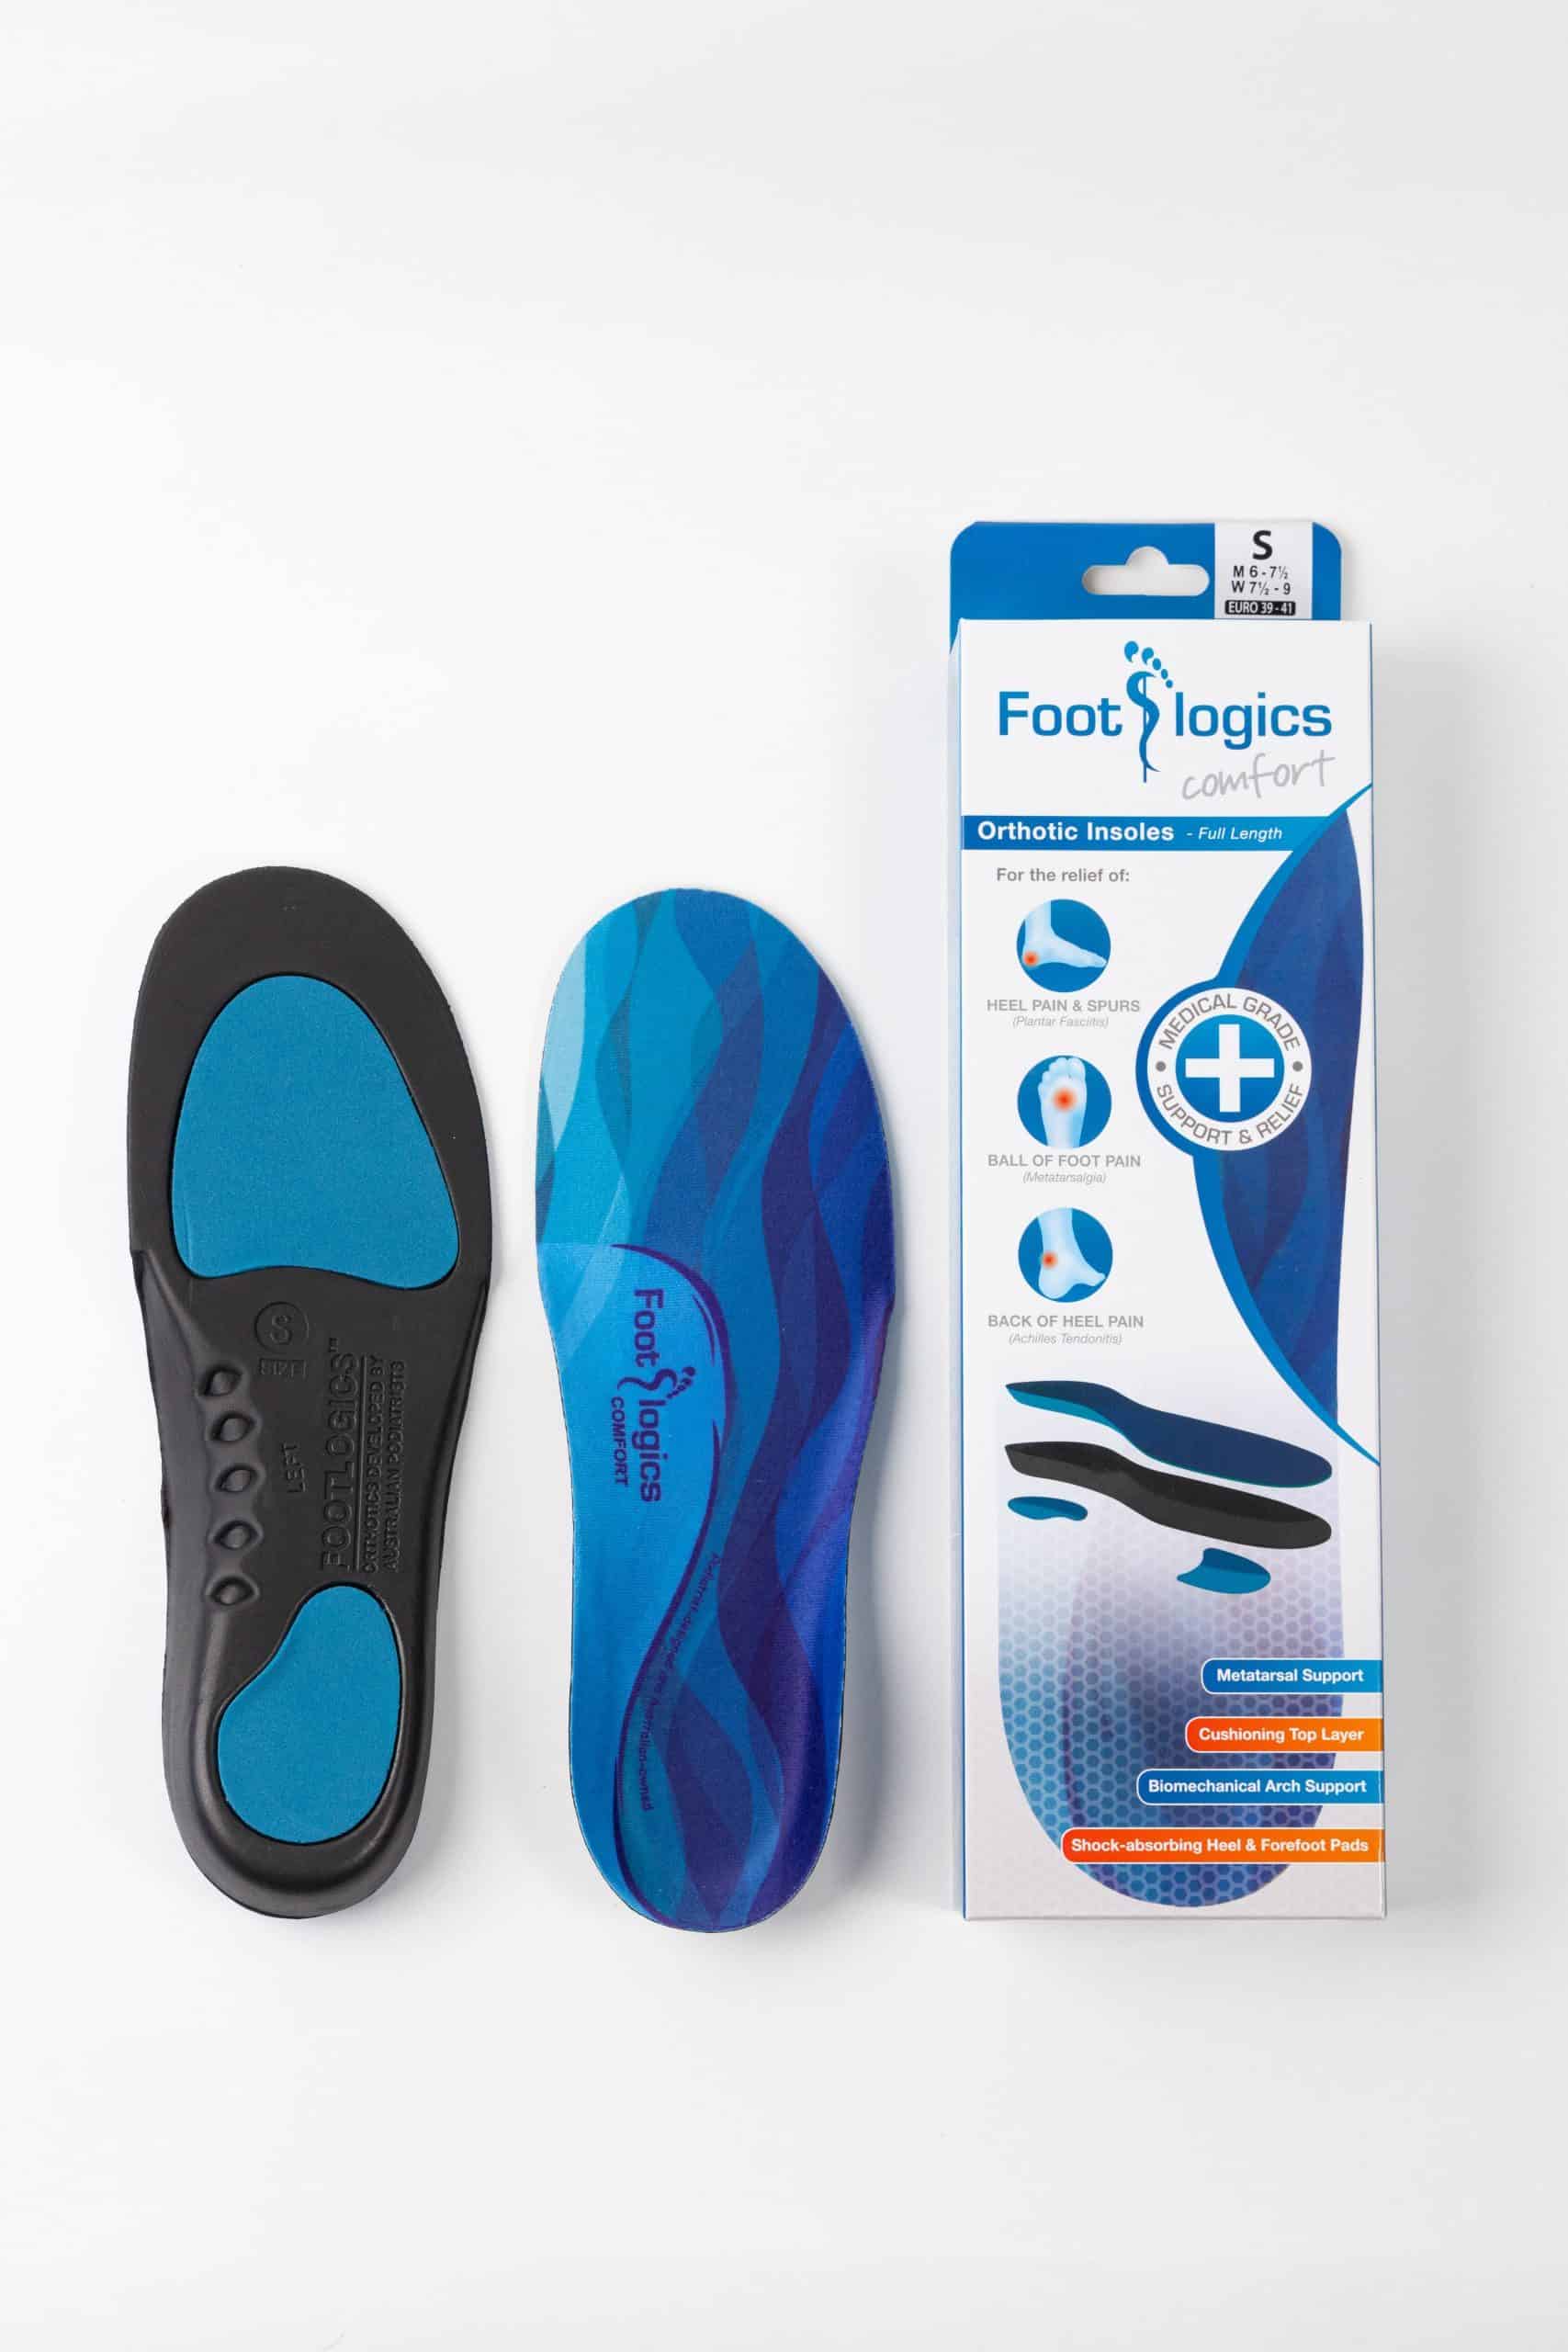 Verknald kijk in elkaar Footlogics Comfort Insoles - Foot Health Solutions